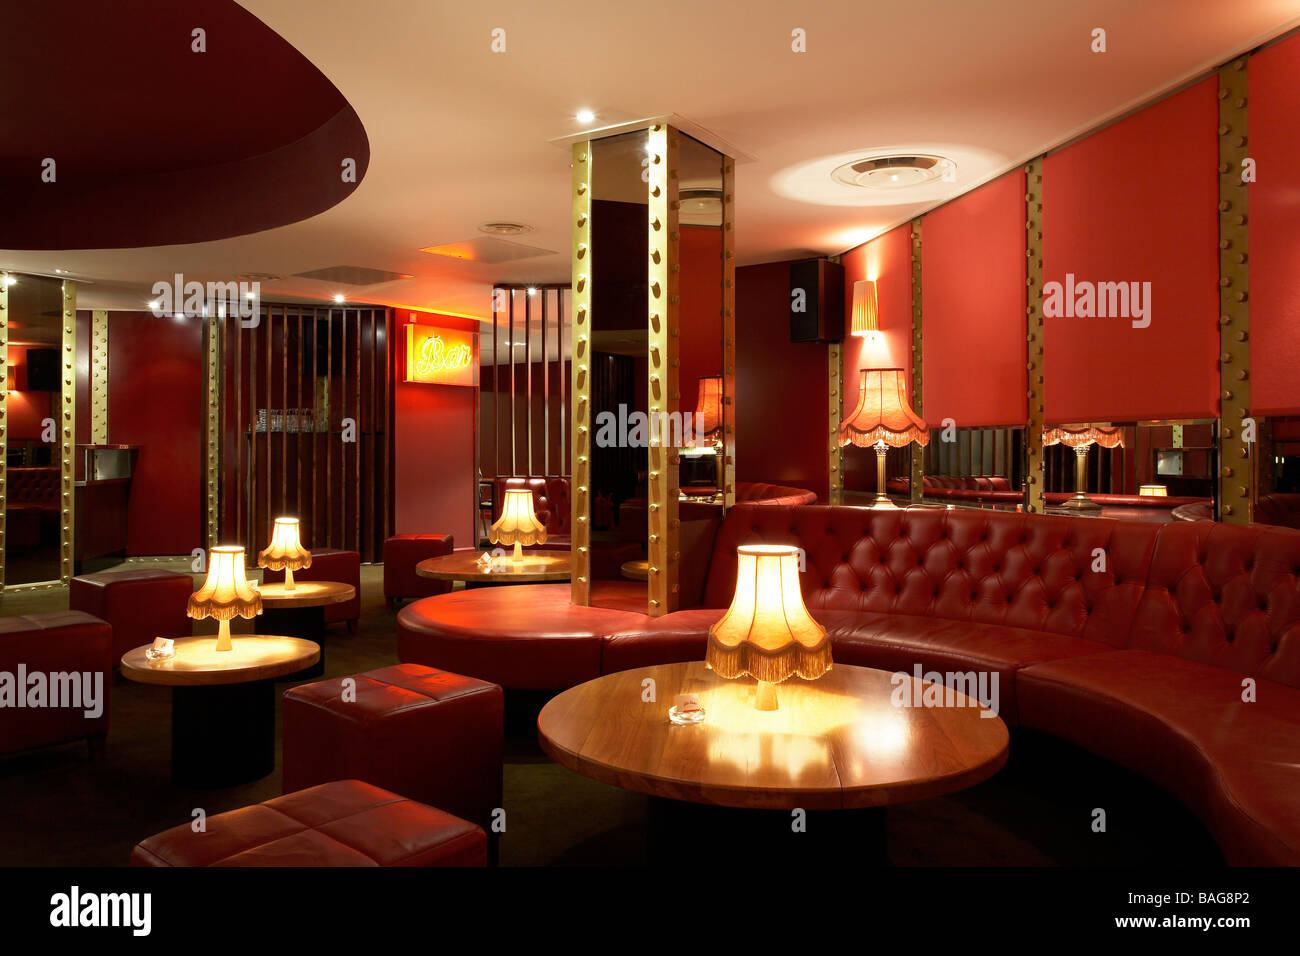 Tutte le corsie a stella, Londra, Regno Unito, architetto sconosciuto, tutte le corsie a stella interna del bar della zona principale che mostra in pelle rossa Foto Stock